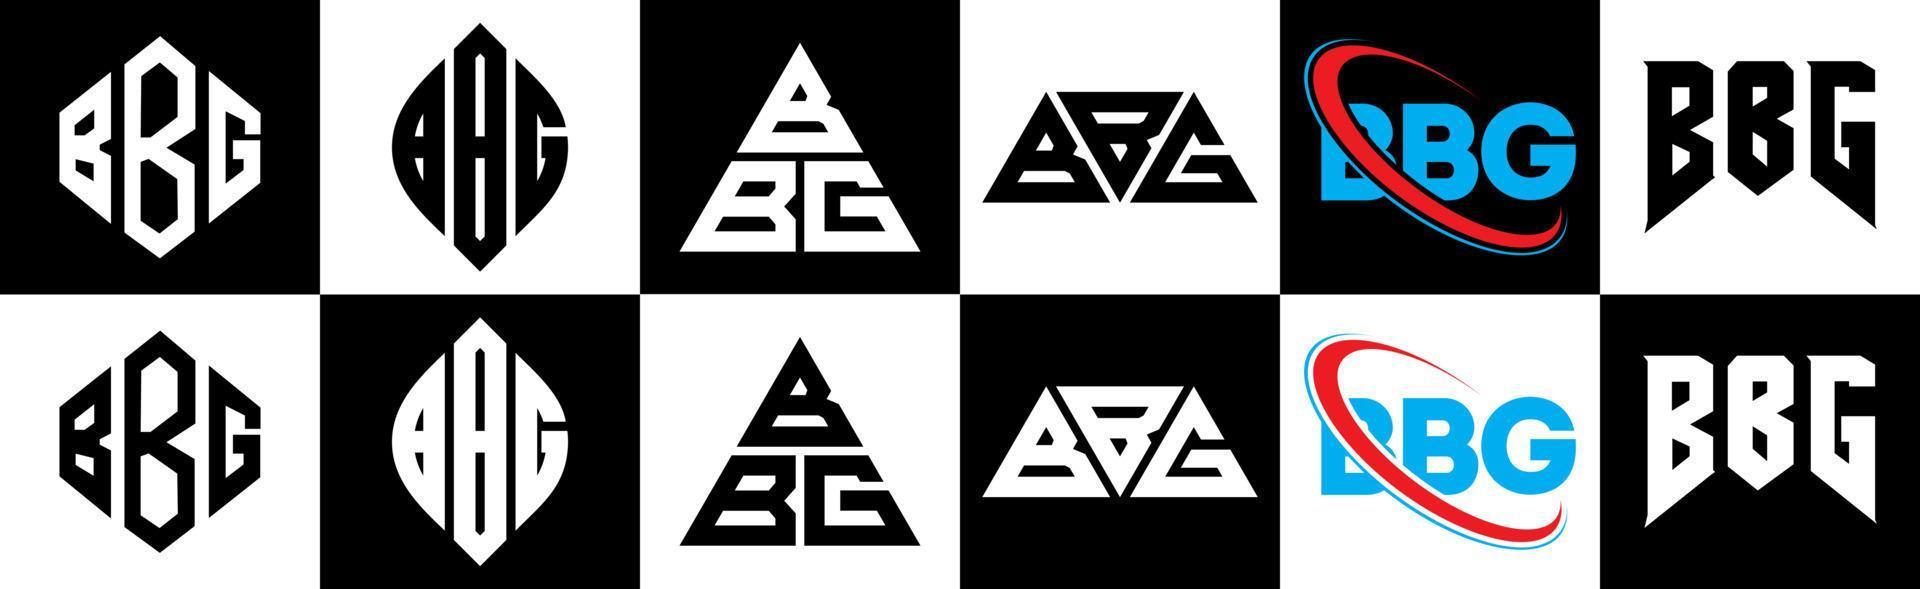 design de logotipo de carta bbg em estilo seis. polígono bbg, círculo, triângulo, hexágono, estilo plano e simples com logotipo de carta de variação de cor preto e branco definido em uma prancheta. bbg logotipo minimalista e clássico vetor